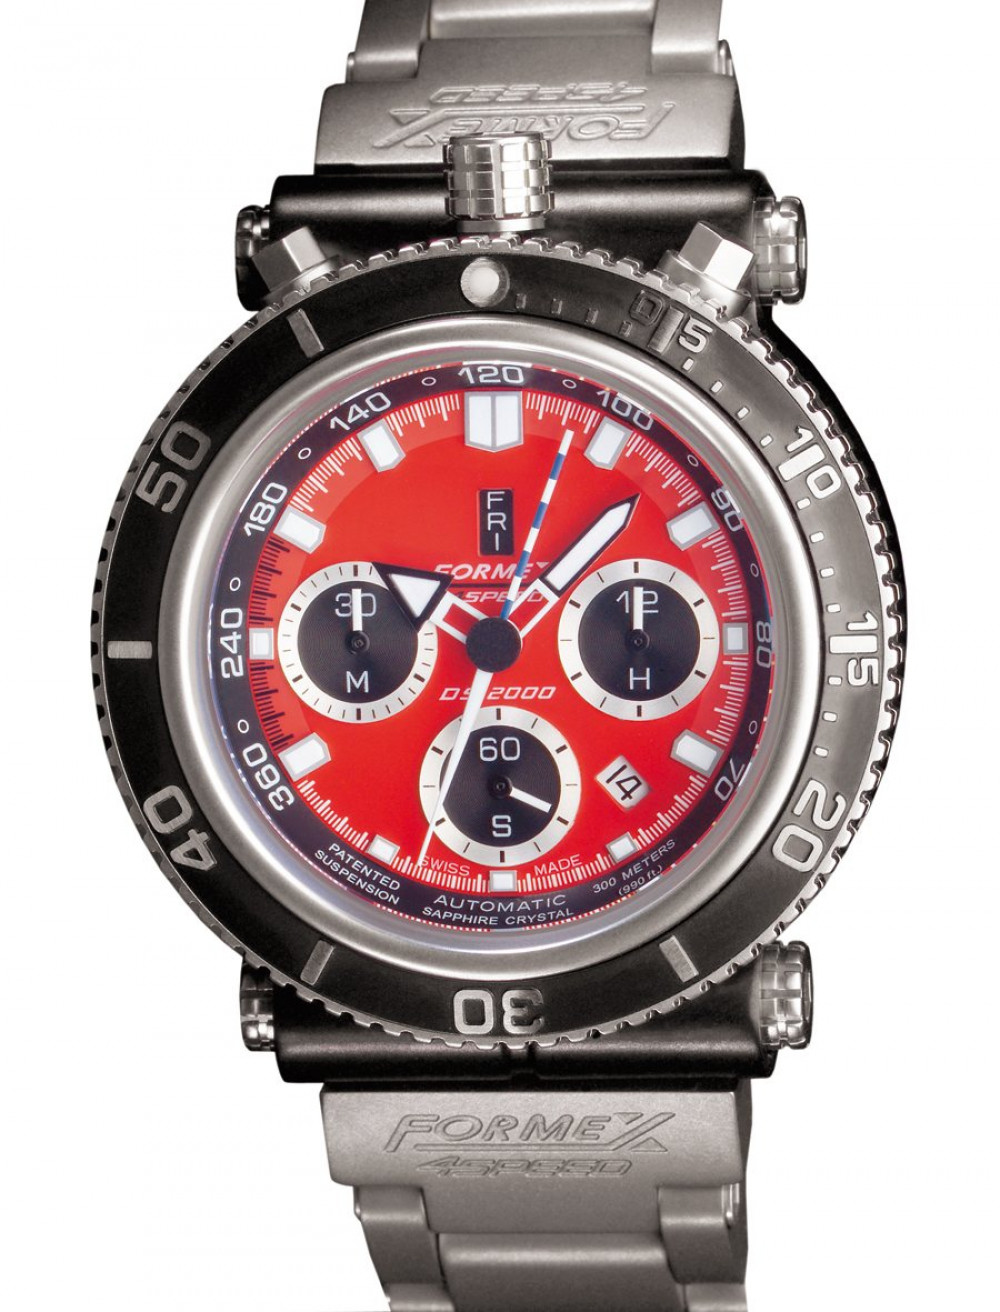 Zegarek firmy Formex 4 Speed, model Chrono Diver